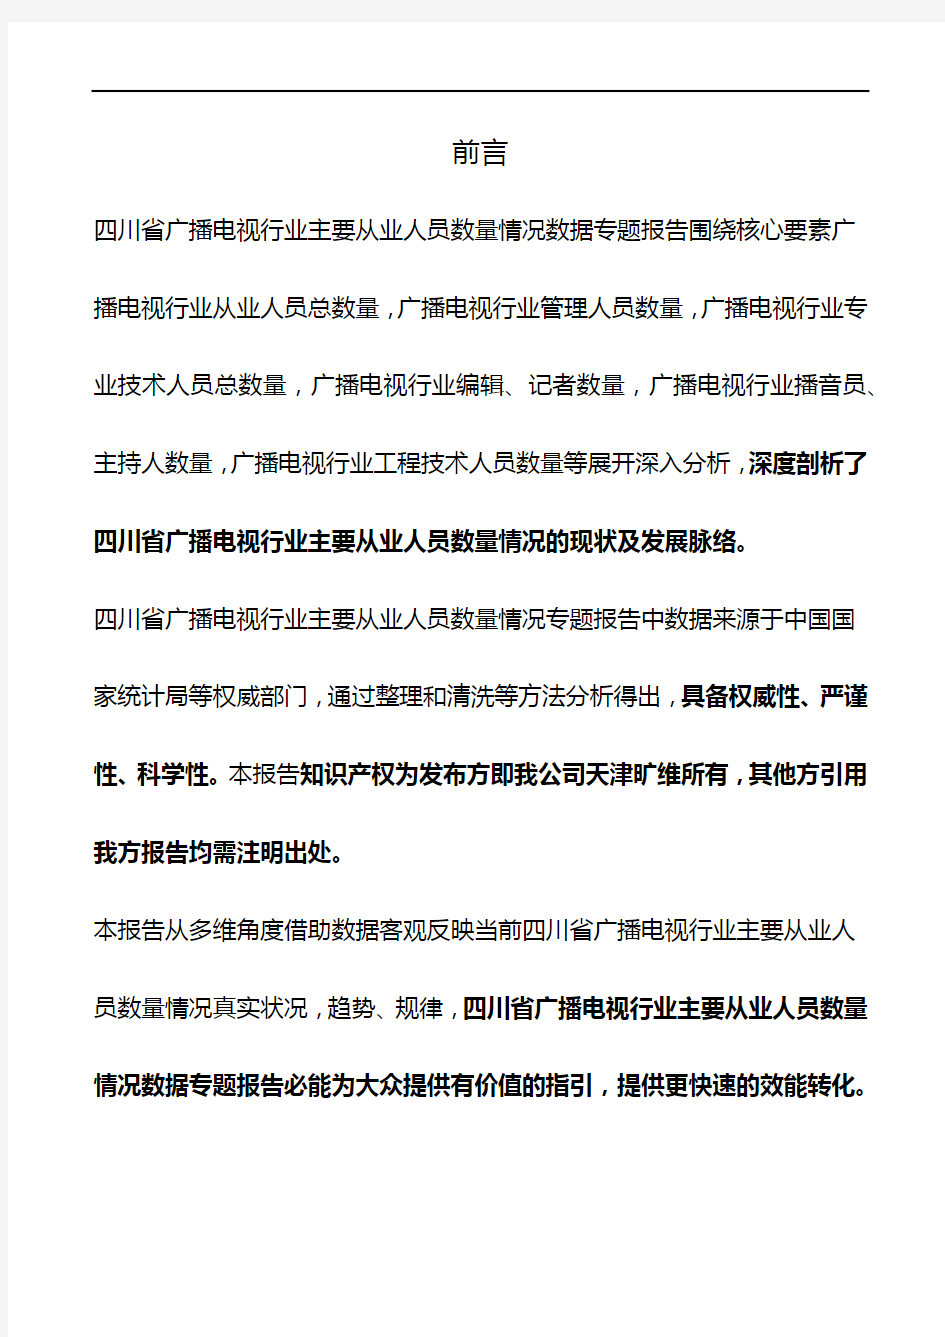 四川省广播电视行业主要从业人员数量情况3年数据专题报告2019版